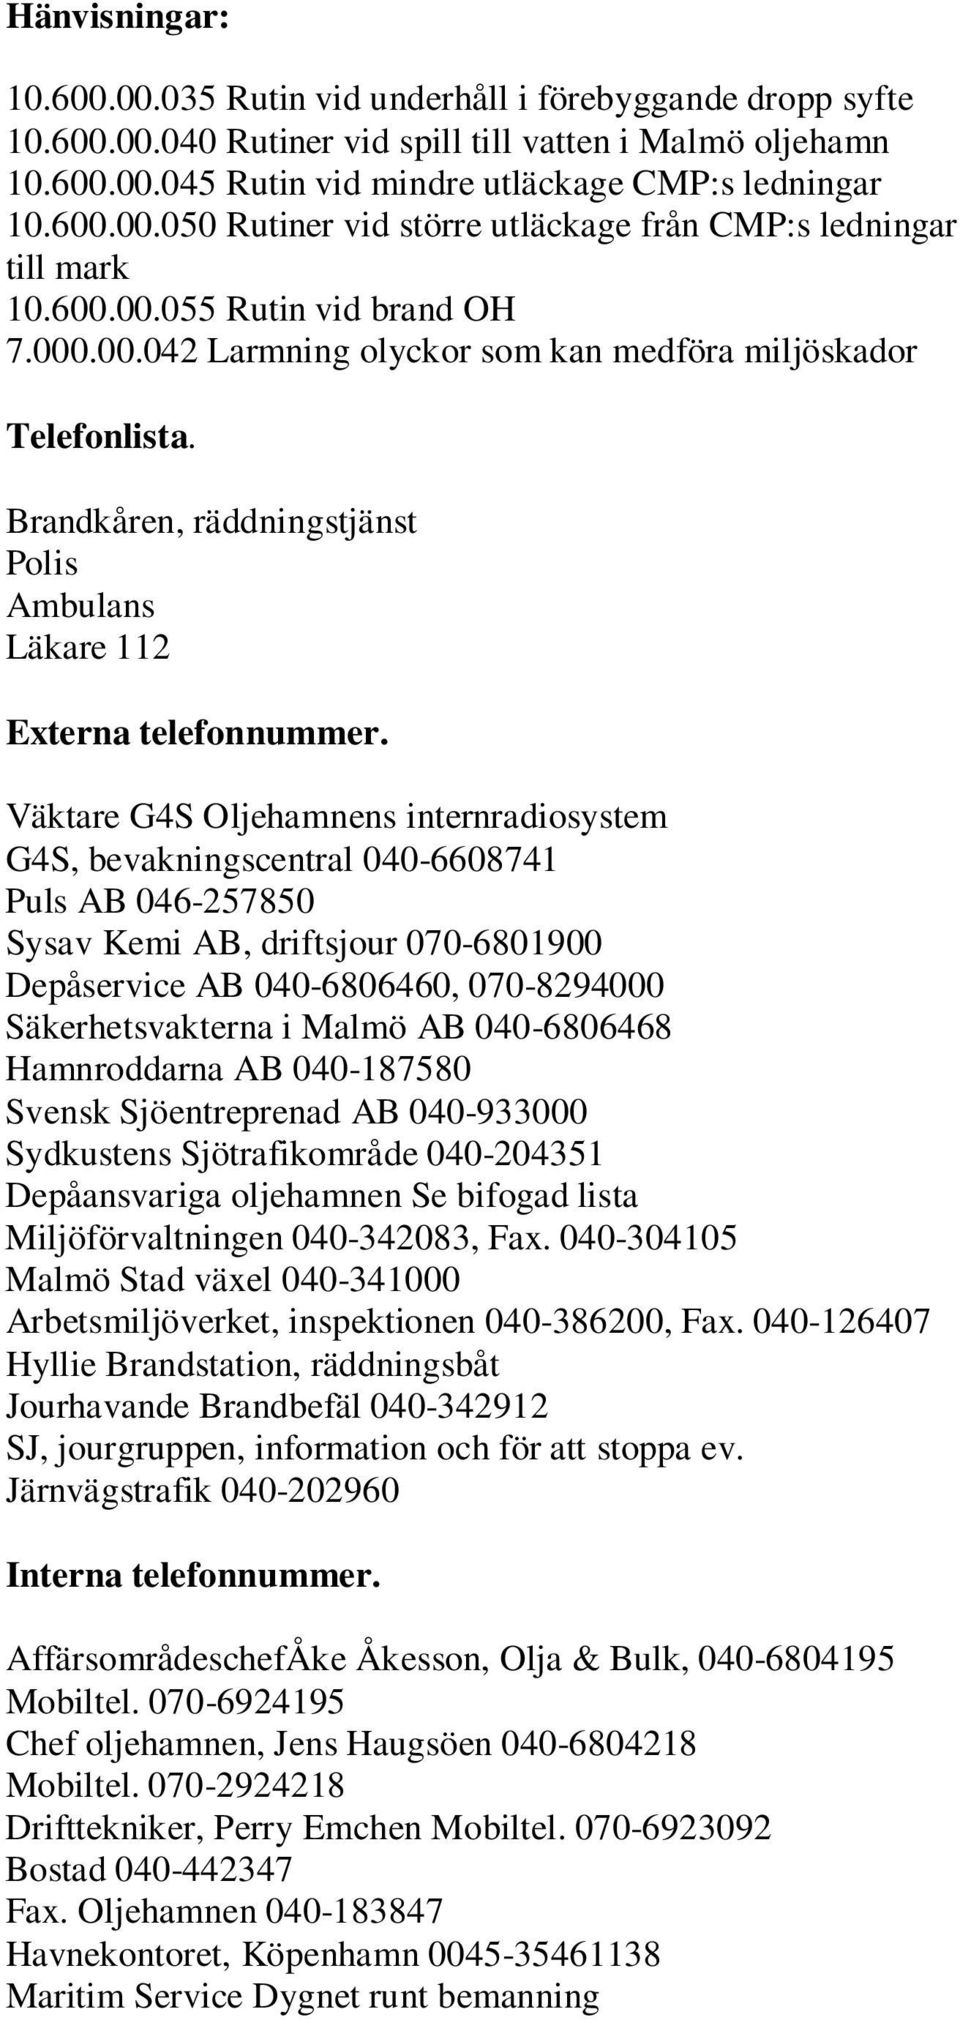 Väktare G4S Oljehamnens internradiosystem G4S, bevakningscentral 040-6608741 Puls AB 046-257850 Sysav Kemi AB, driftsjour 070-6801900 Depåservice AB 040-6806460, 070-8294000 Säkerhetsvakterna i Malmö